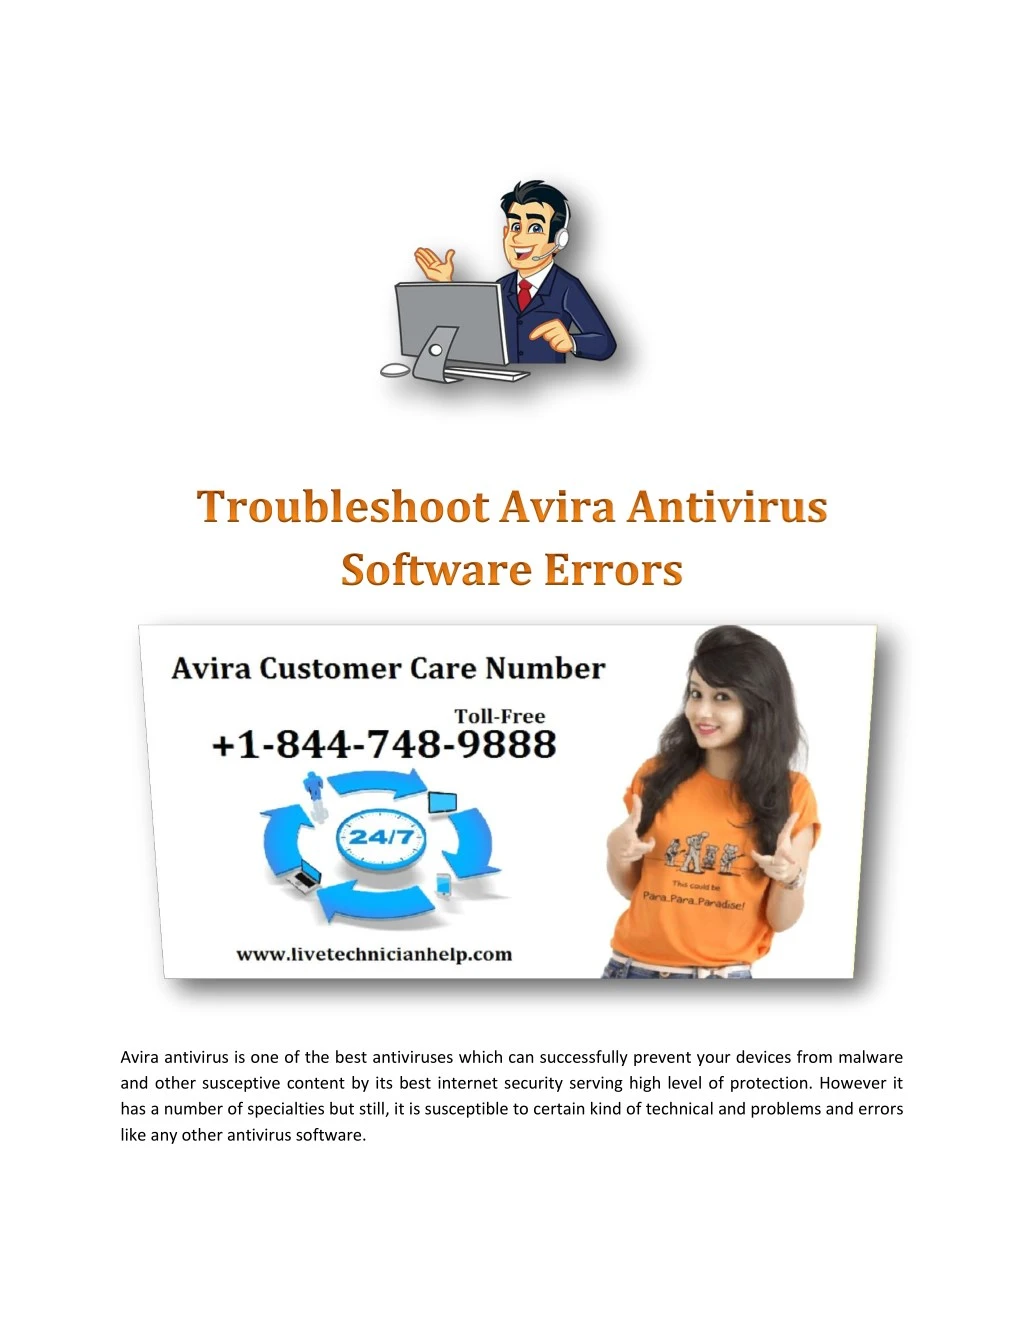 avira free antivirus problems